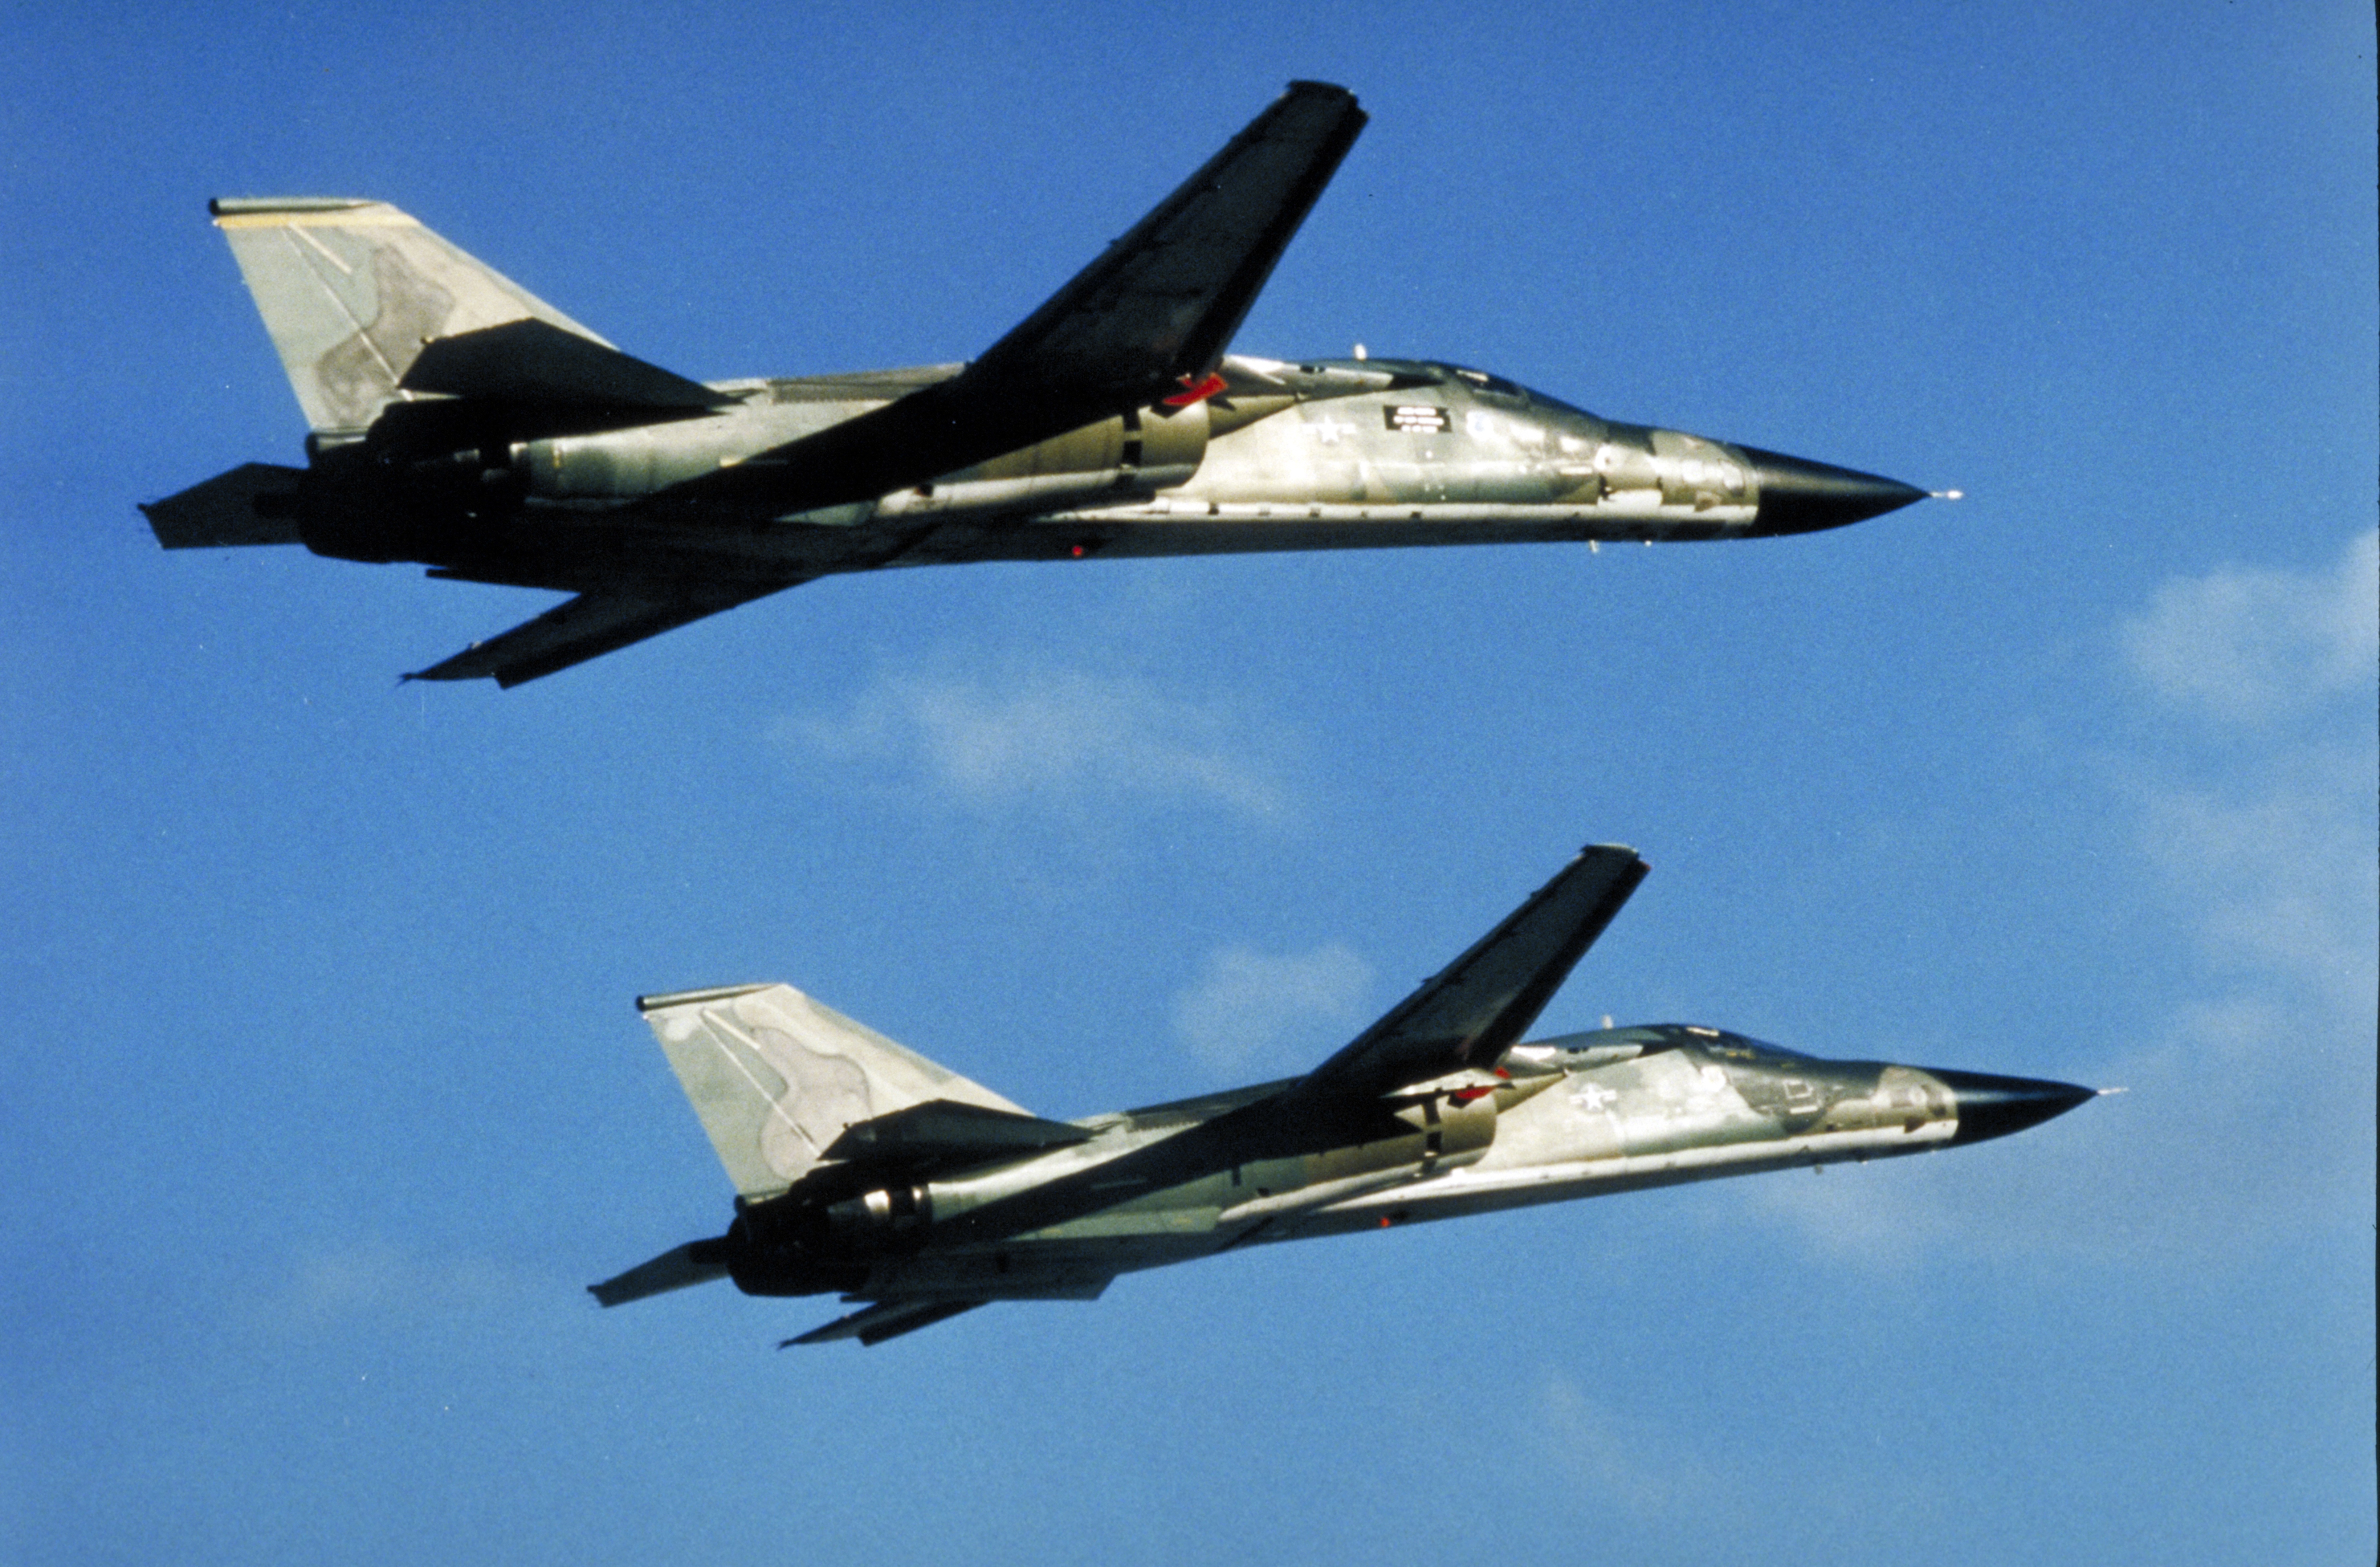 F-111